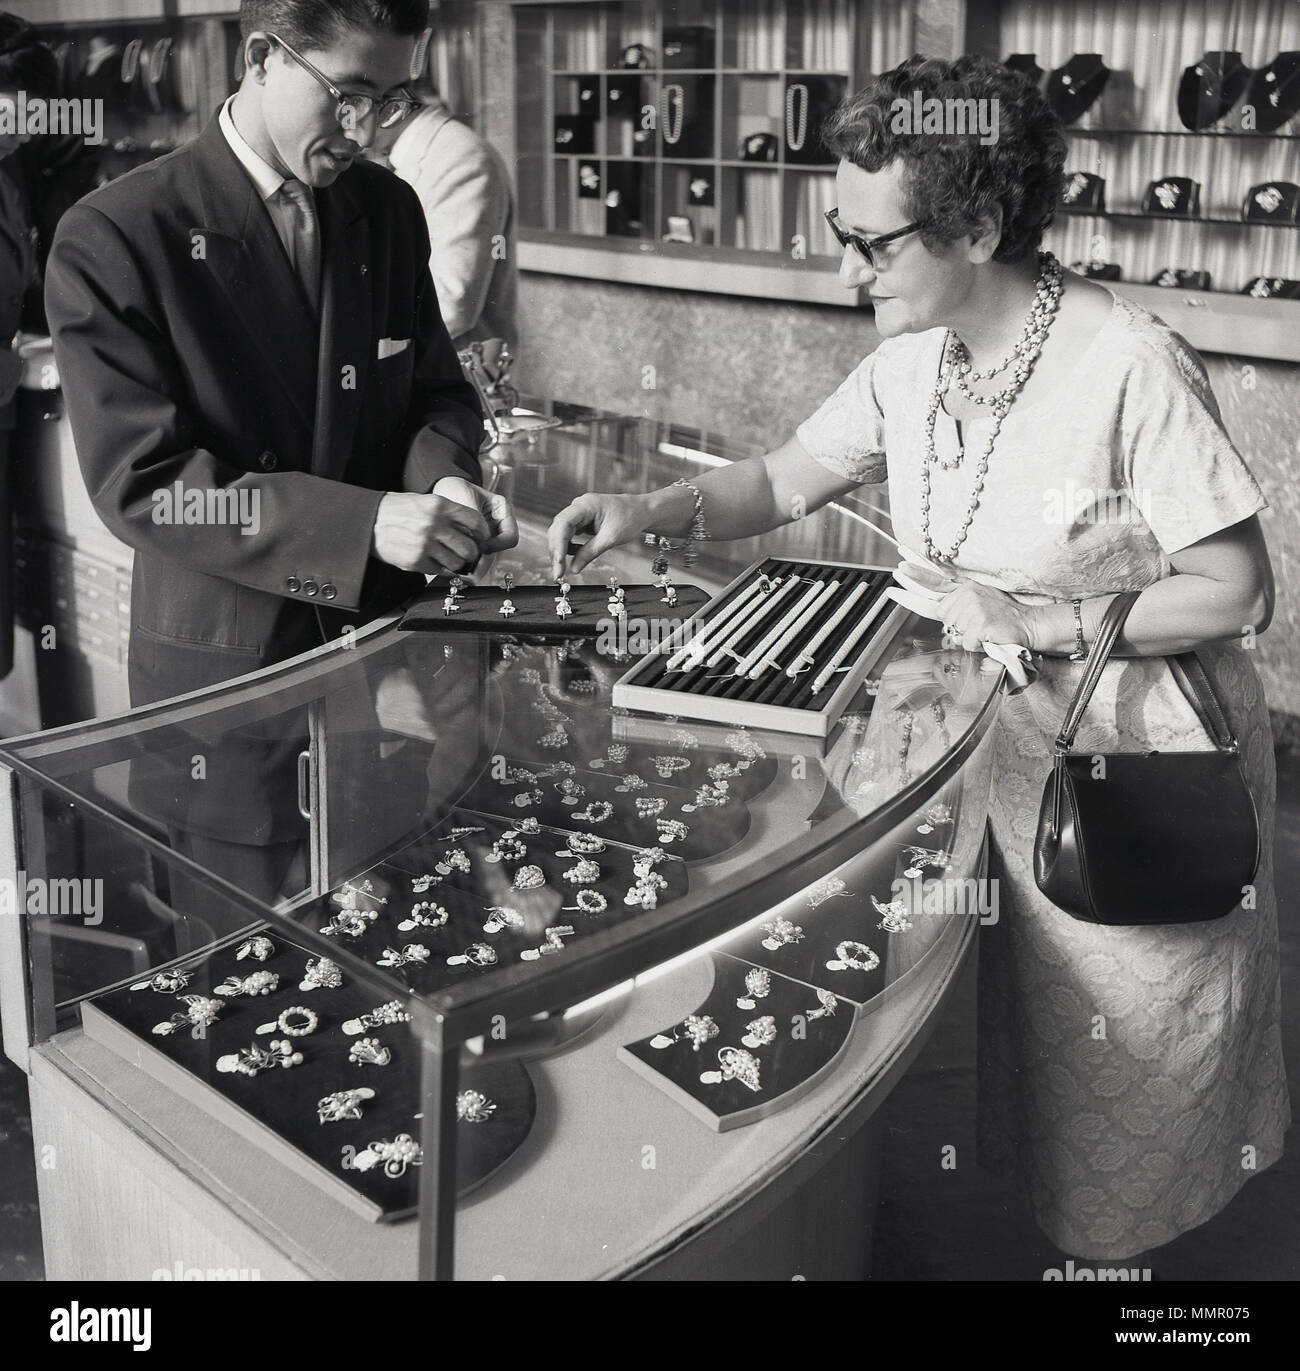 Degli anni Cinquanta, storico western signora con borsetta in  corrispondenza di un banco espositore all'interno di un negozio gioielli  essendo mostrati alcuni gioielli perla da un giapponese assistente vendite,  Tokyo, Giappone. Il